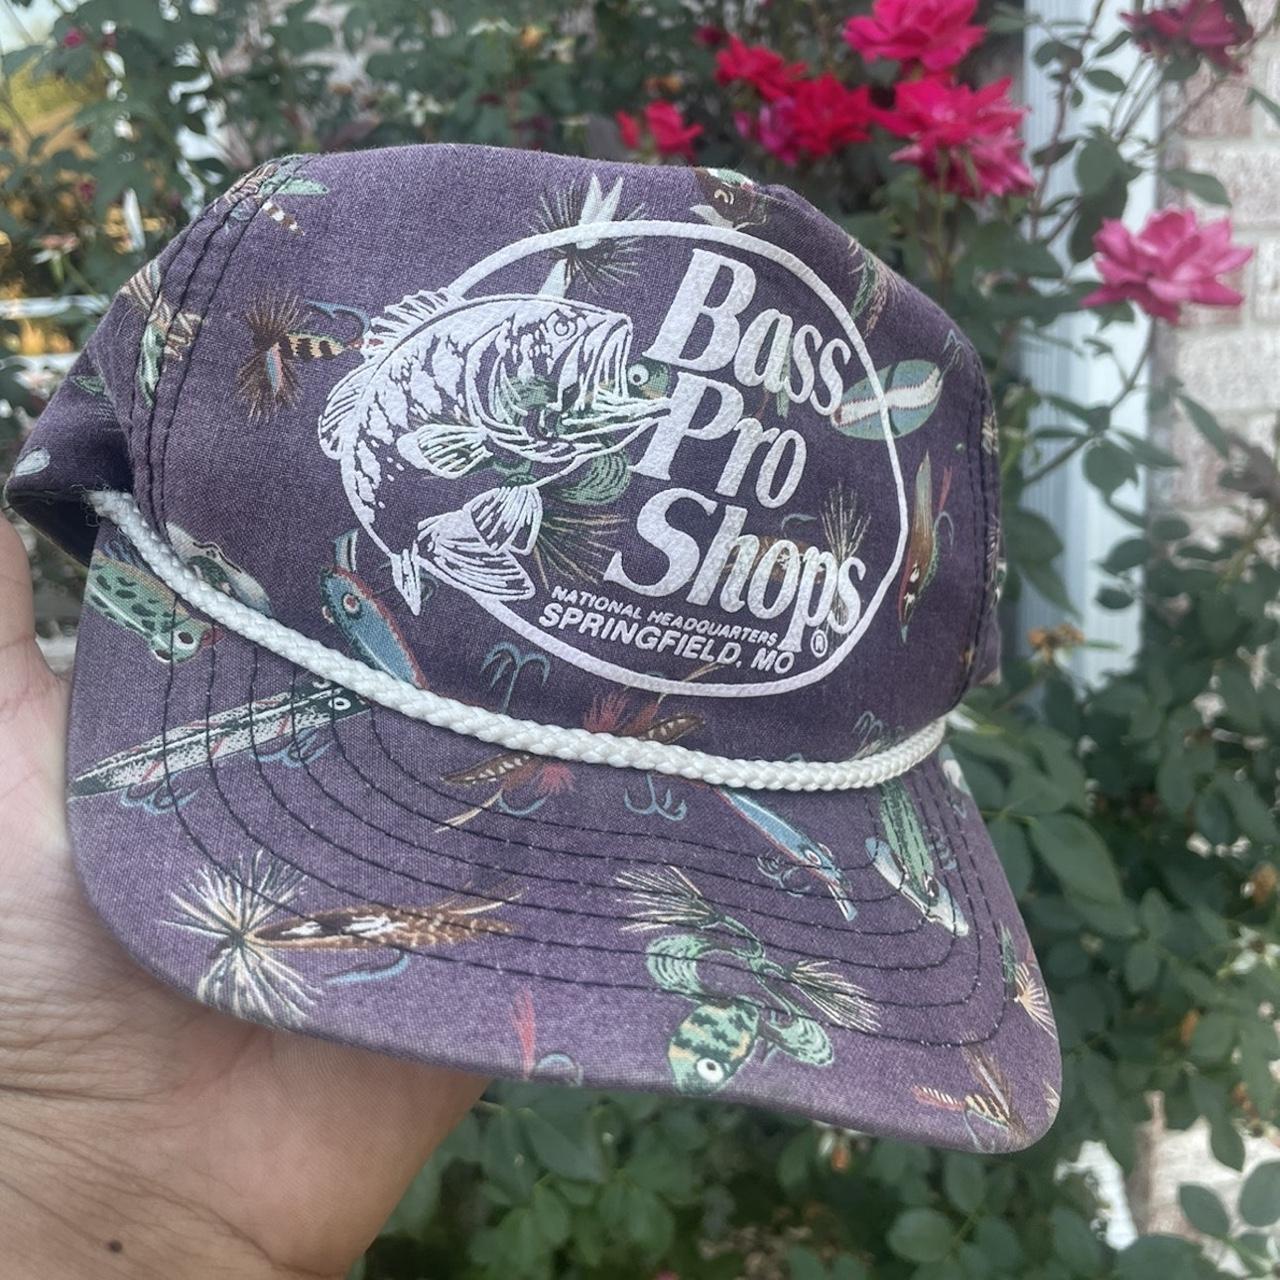 2 Bass Pro shop hats - Depop